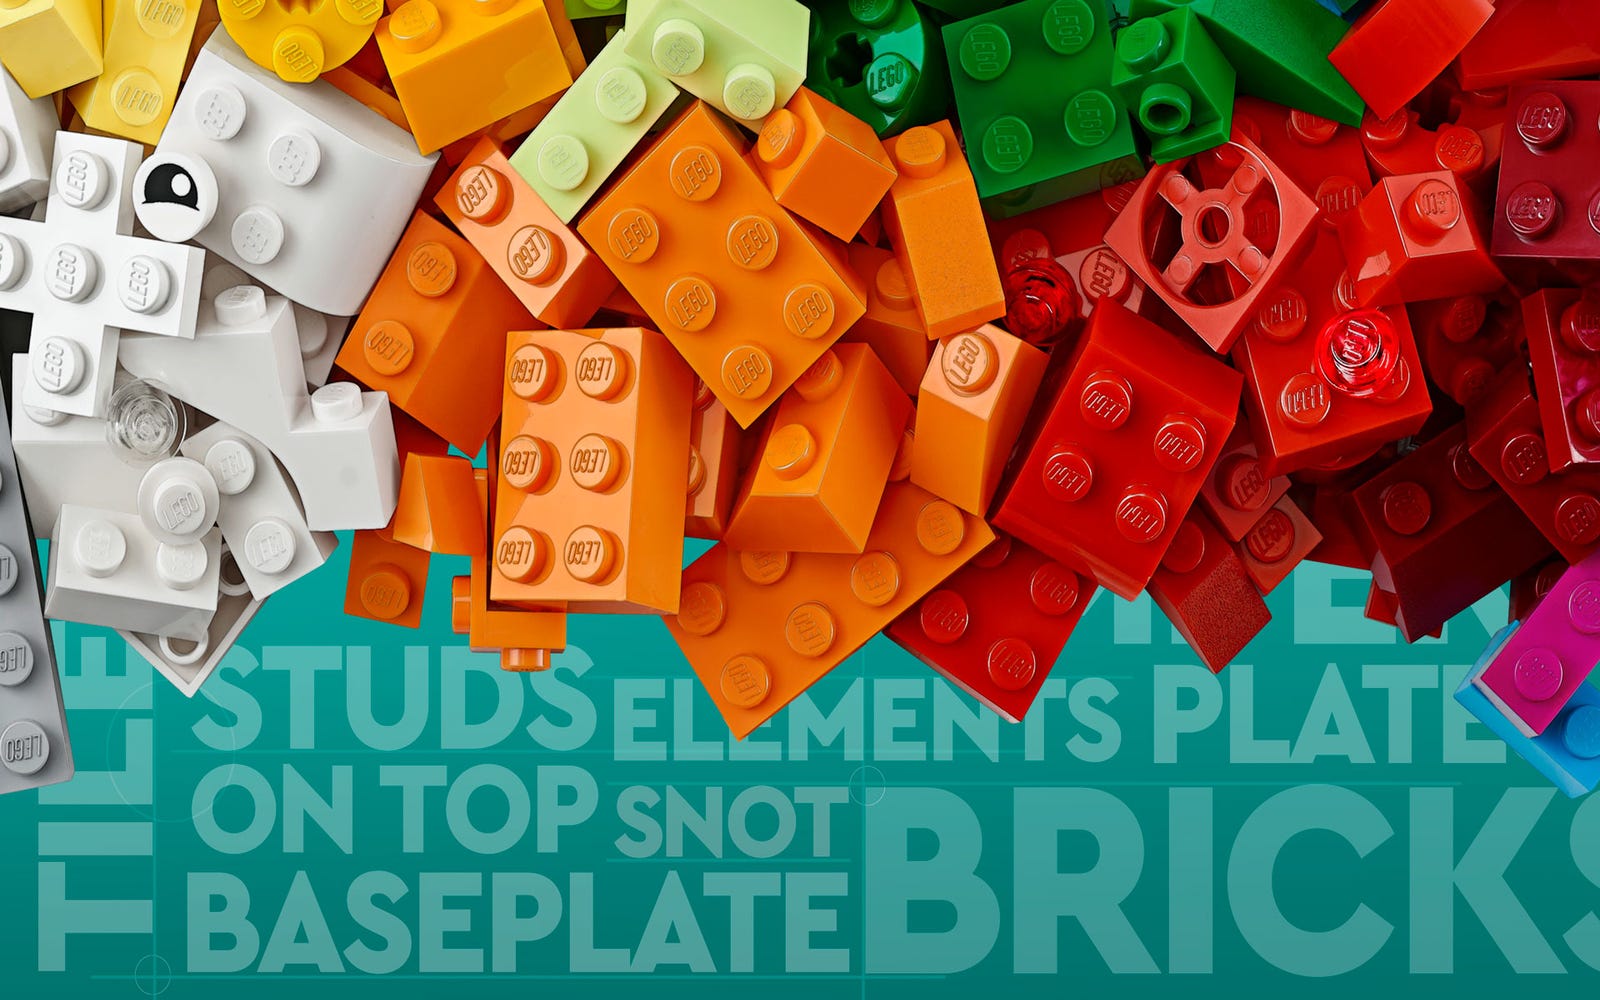 Conoscenza essenziale dei mattoncini LEGO®: le cose da sapere!